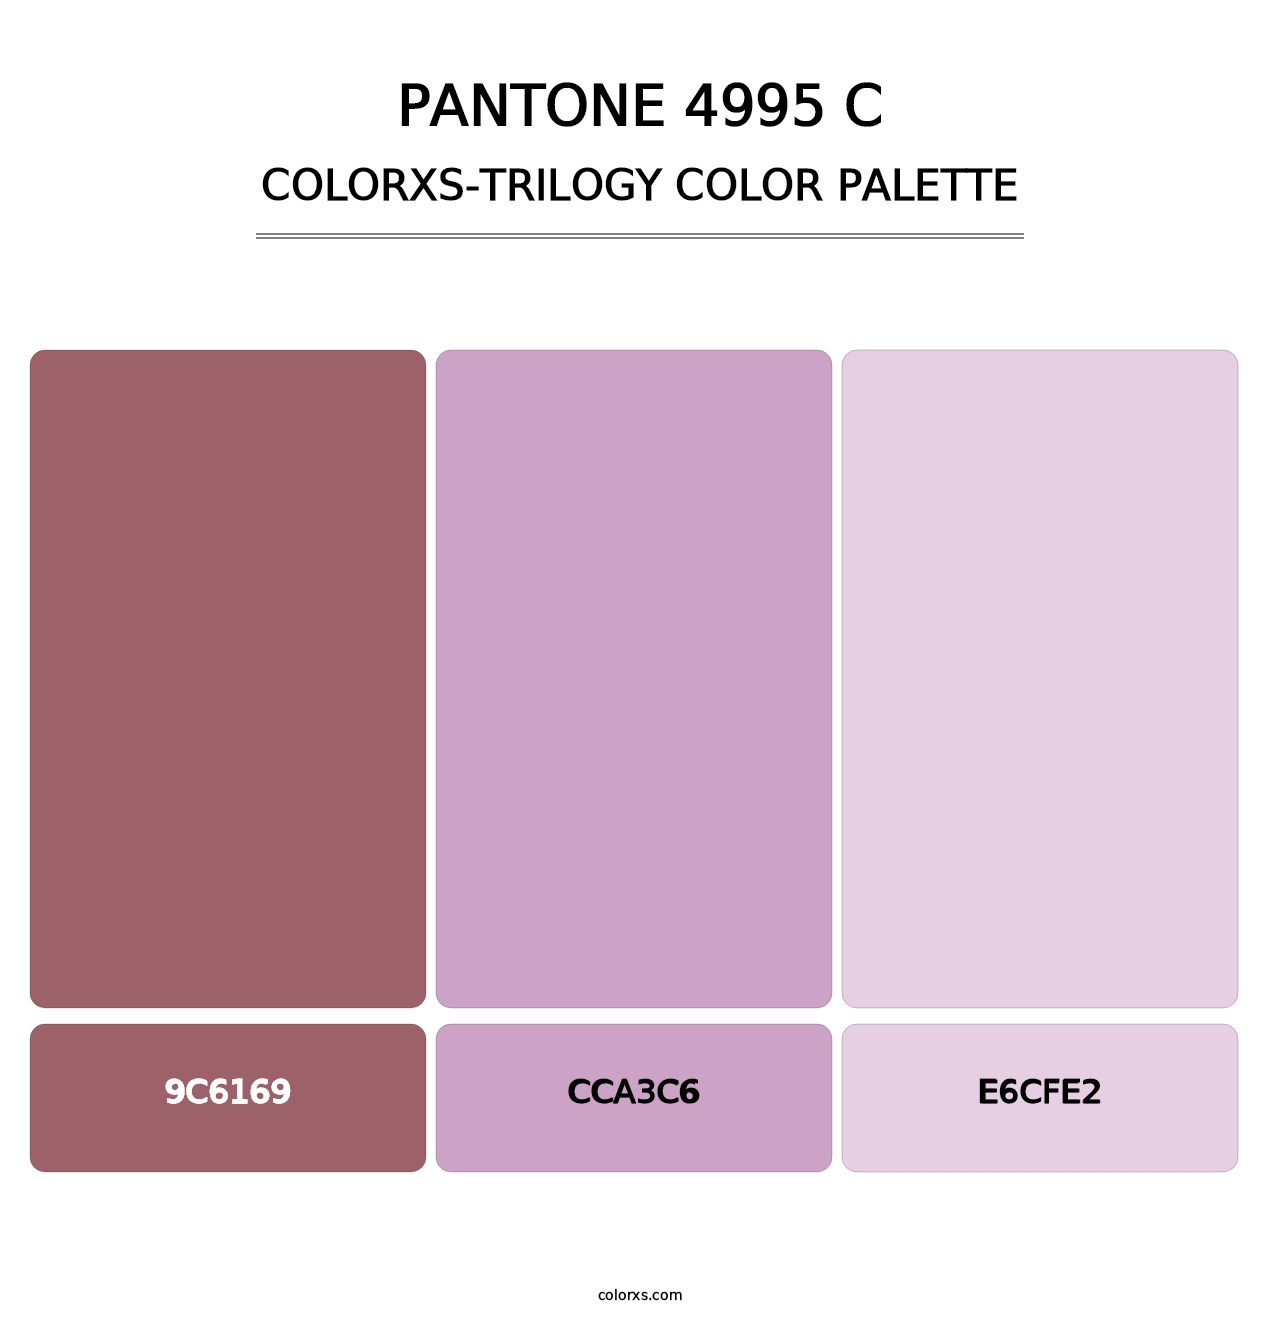 PANTONE 4995 C - Colorxs Trilogy Palette